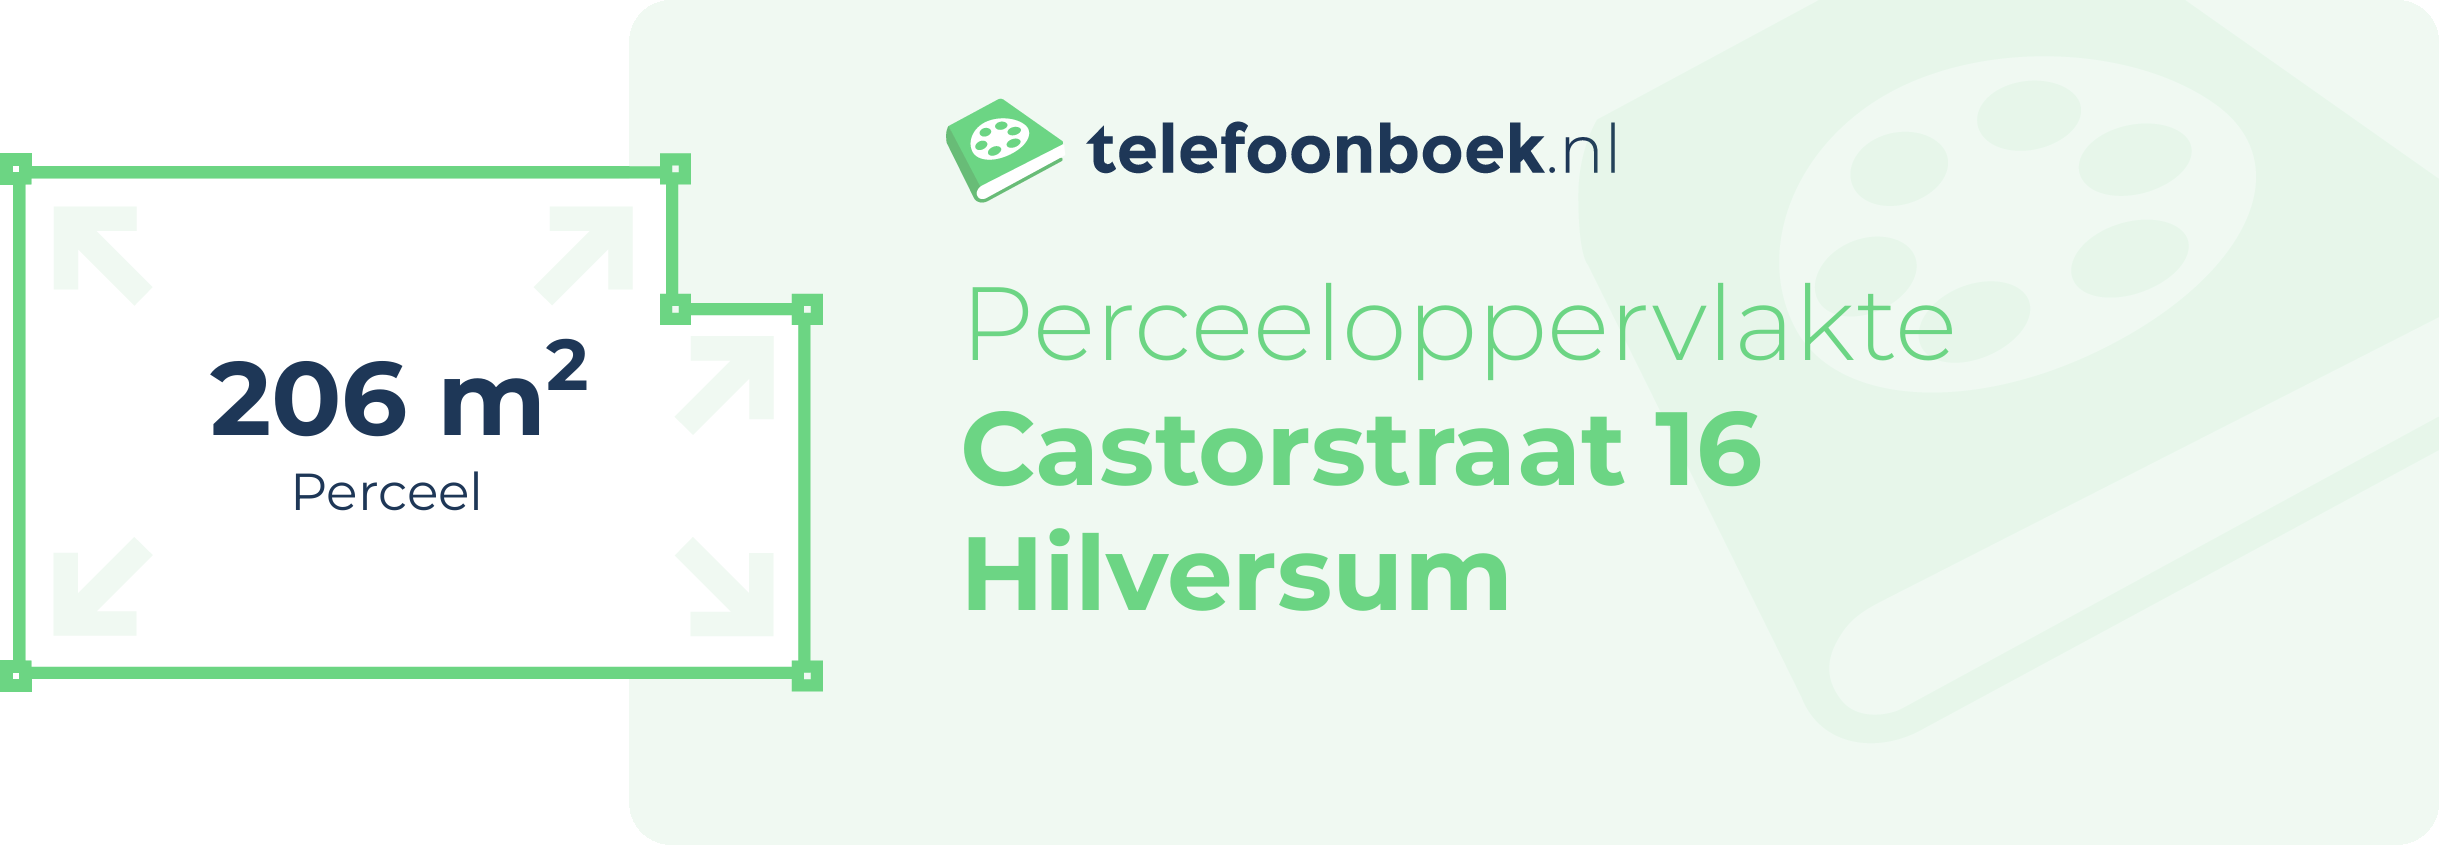 Perceeloppervlakte Castorstraat 16 Hilversum